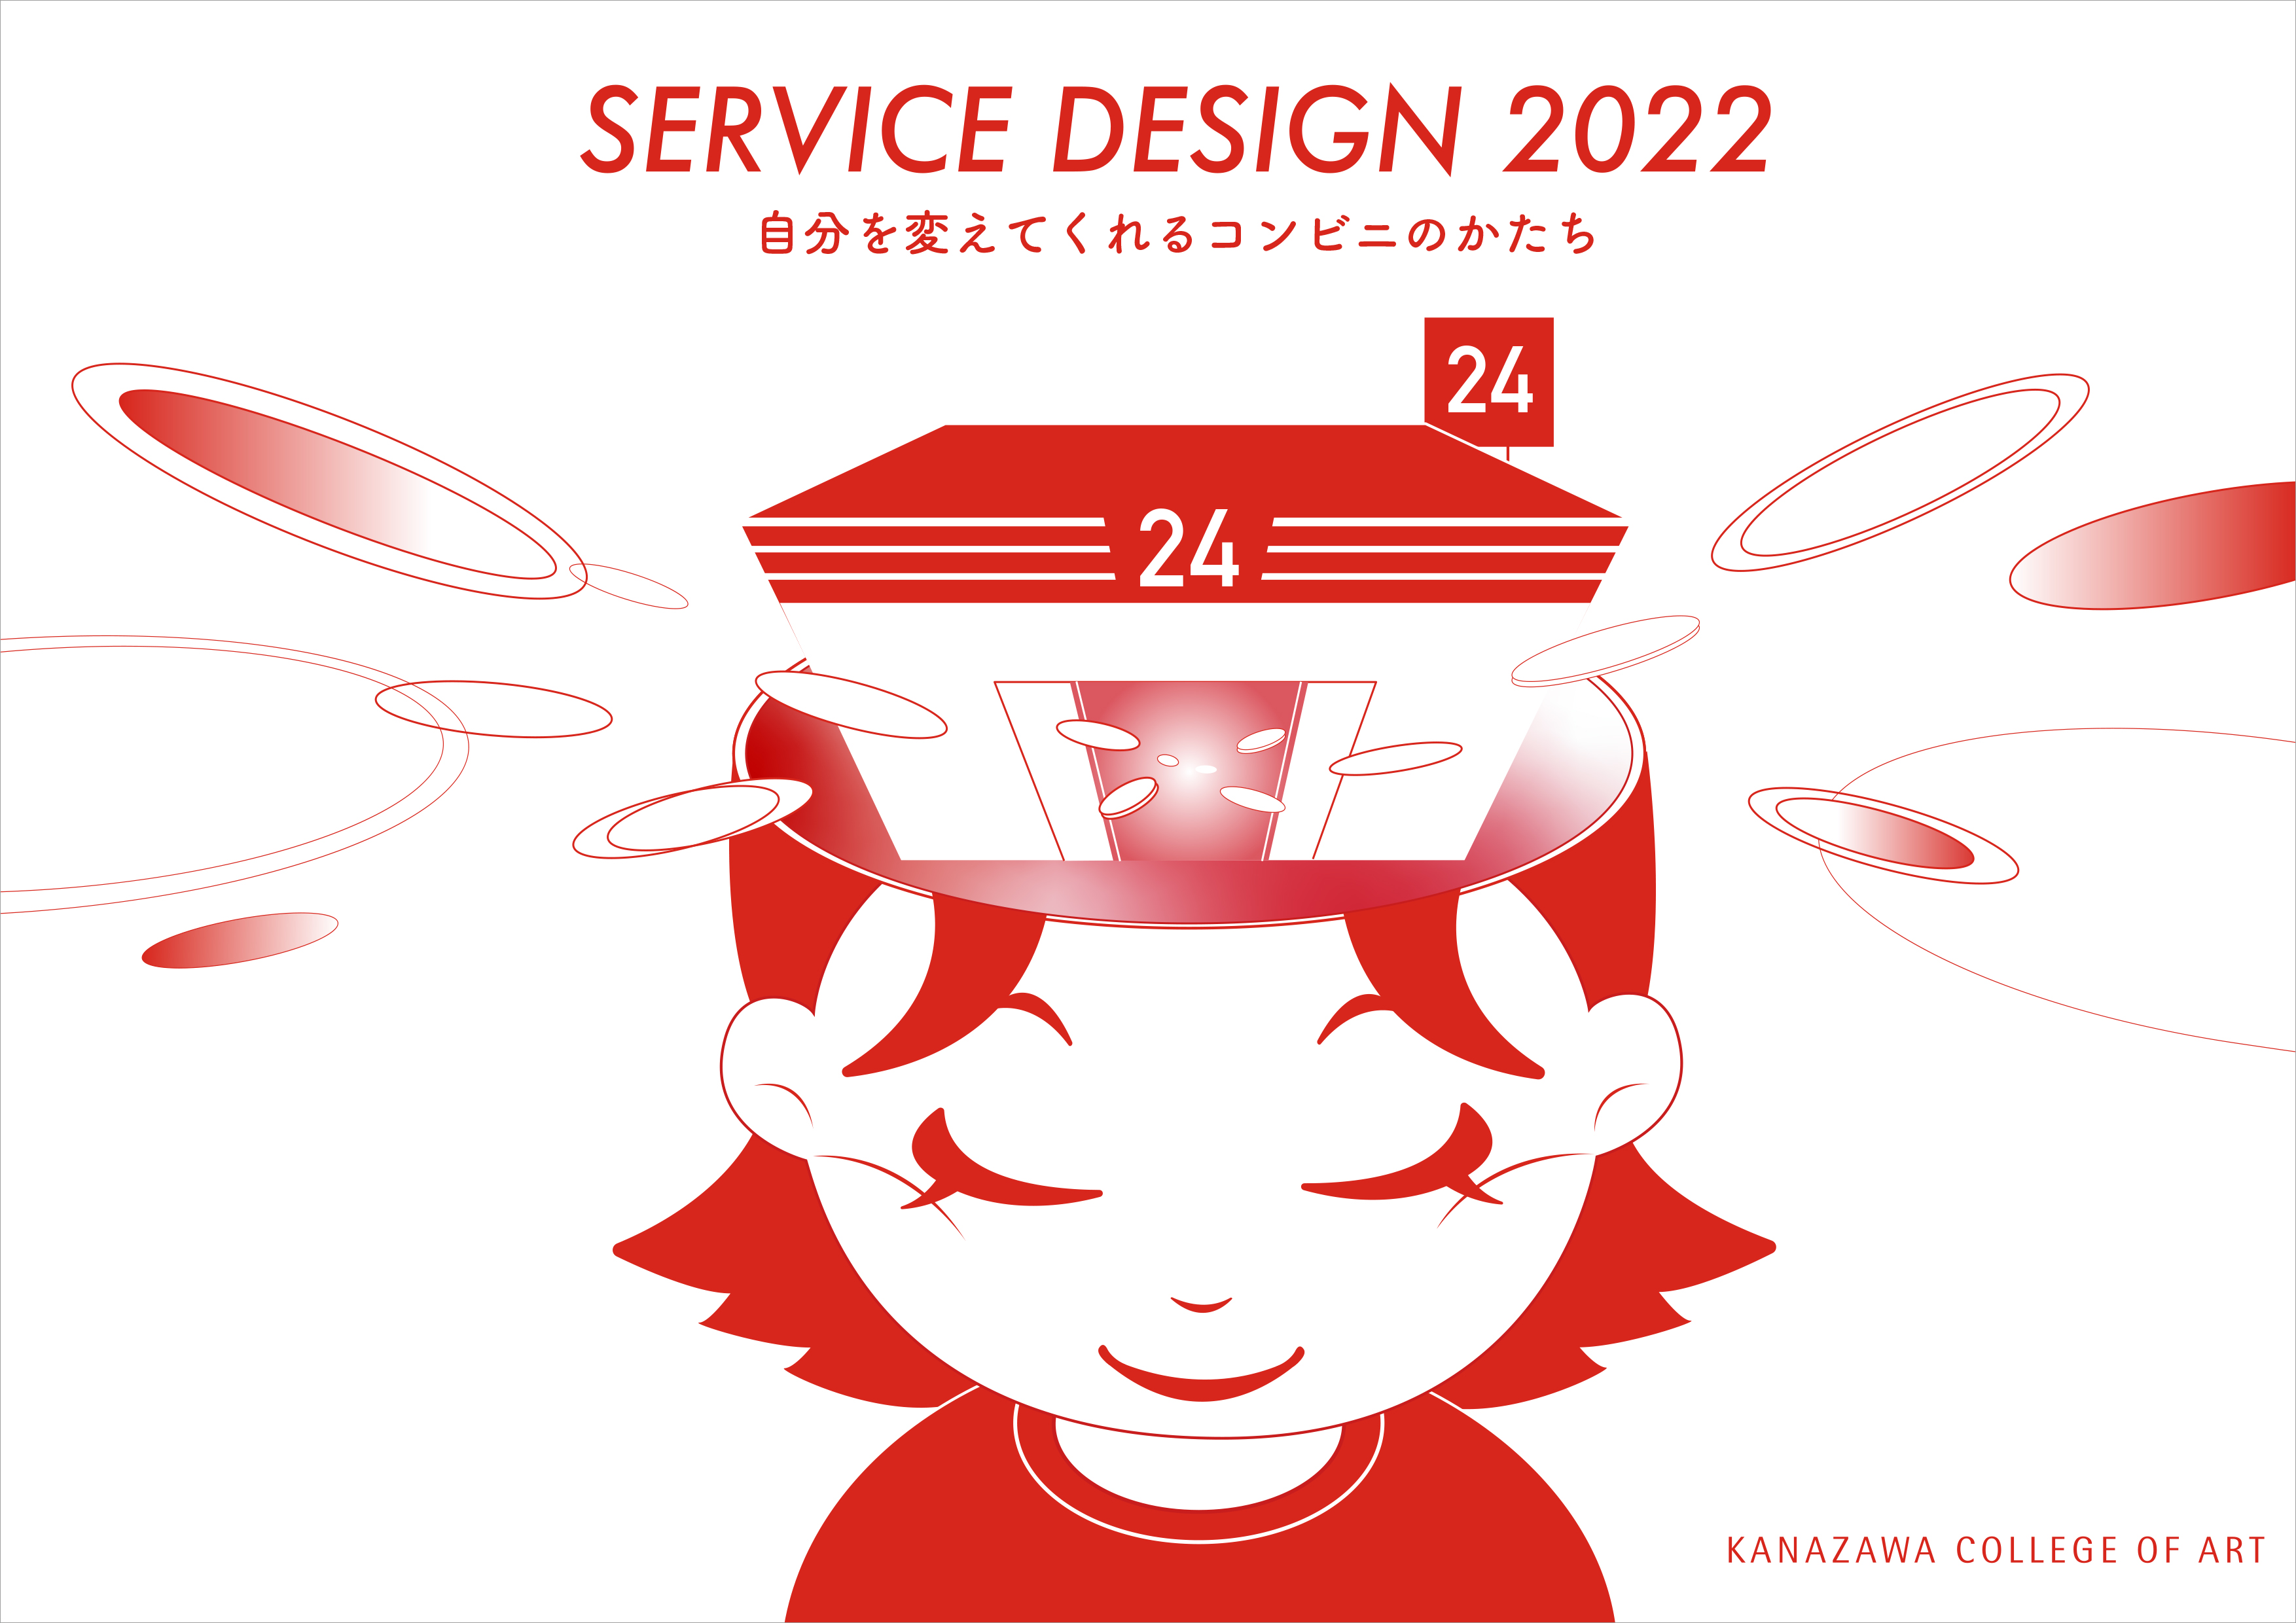 自分を変えてくれるコンビニのかたち<br>日常にある新しい拠点のデザイン<br>SERVICE DESIGN 2022